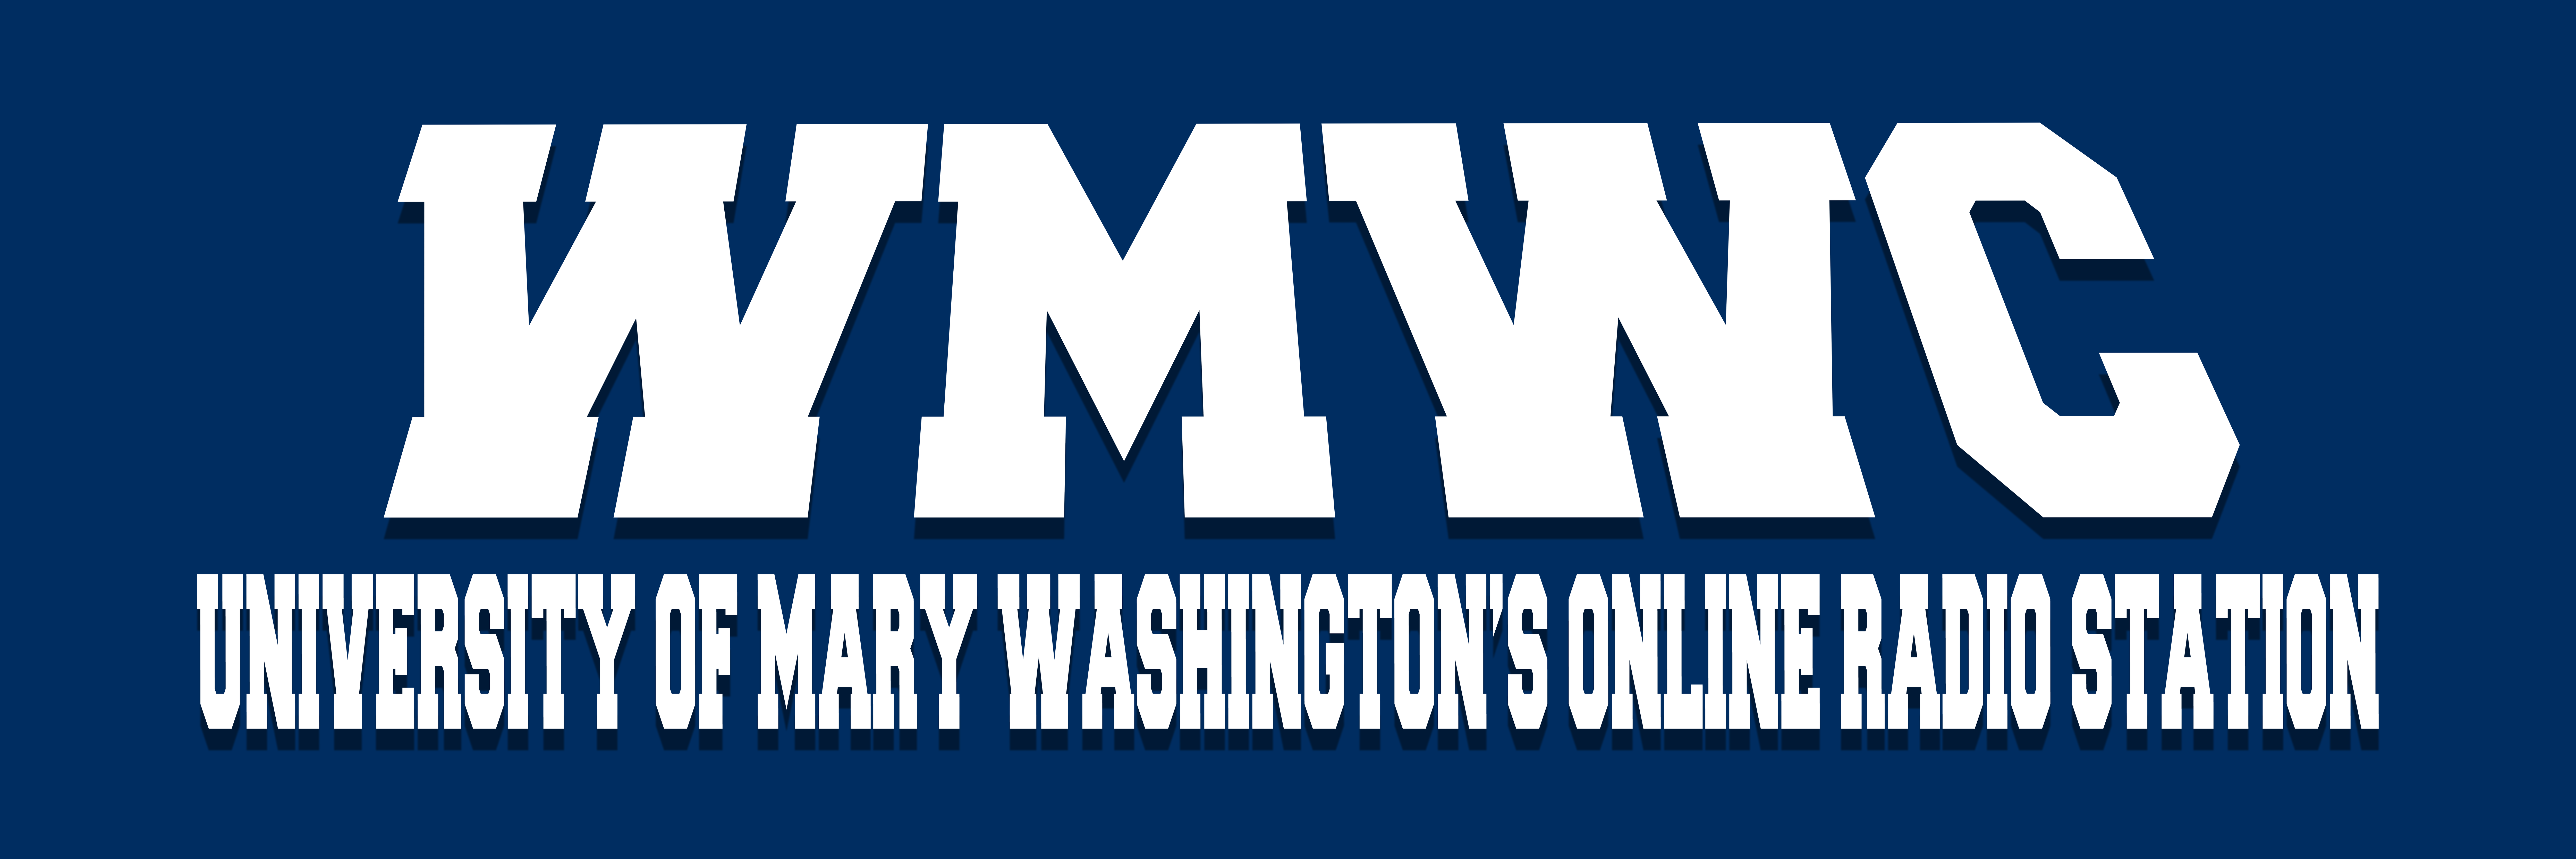 WMWC University of Mary Washington's Online Radio Station